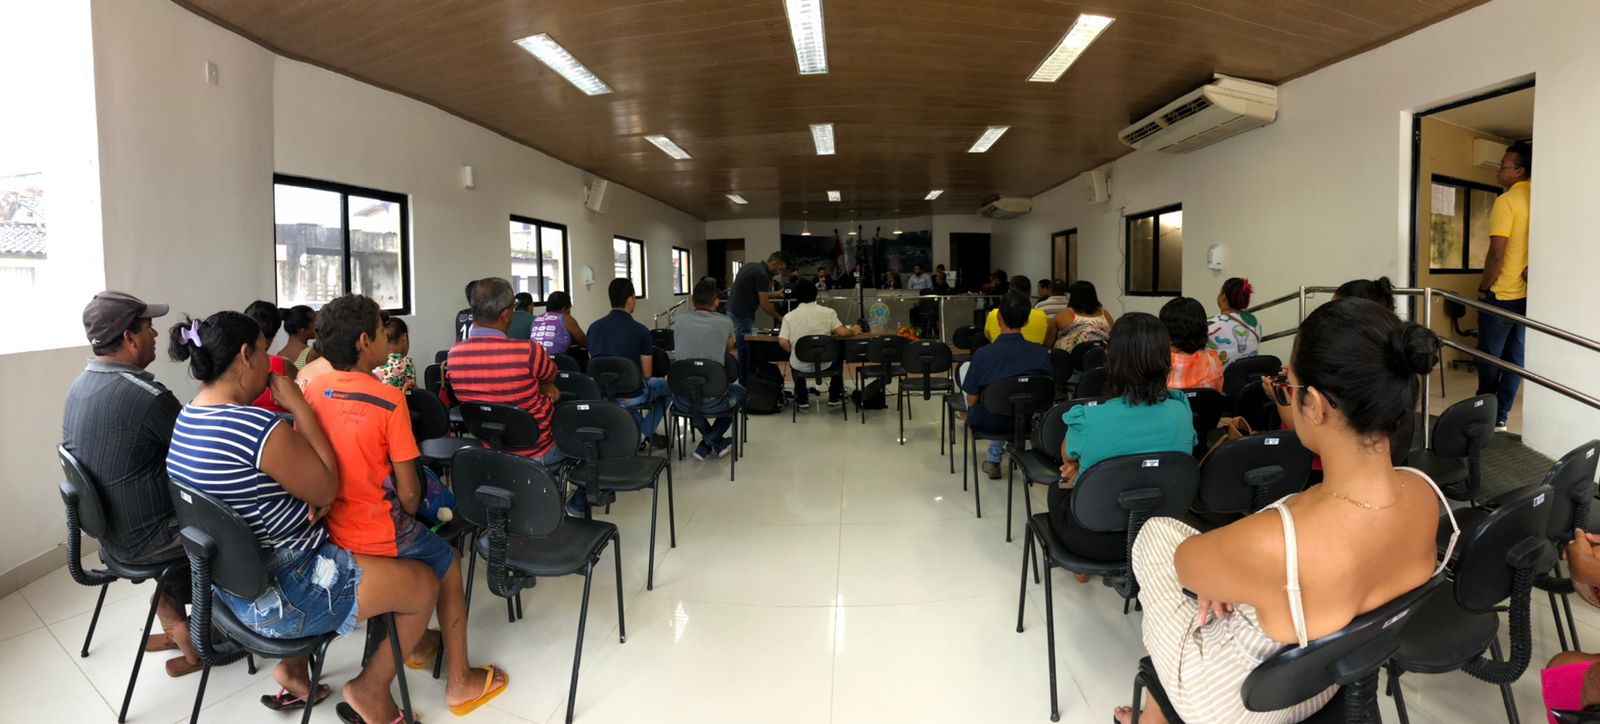 Audiência Pública discute horários de funcionamento de estabelecimentos do município